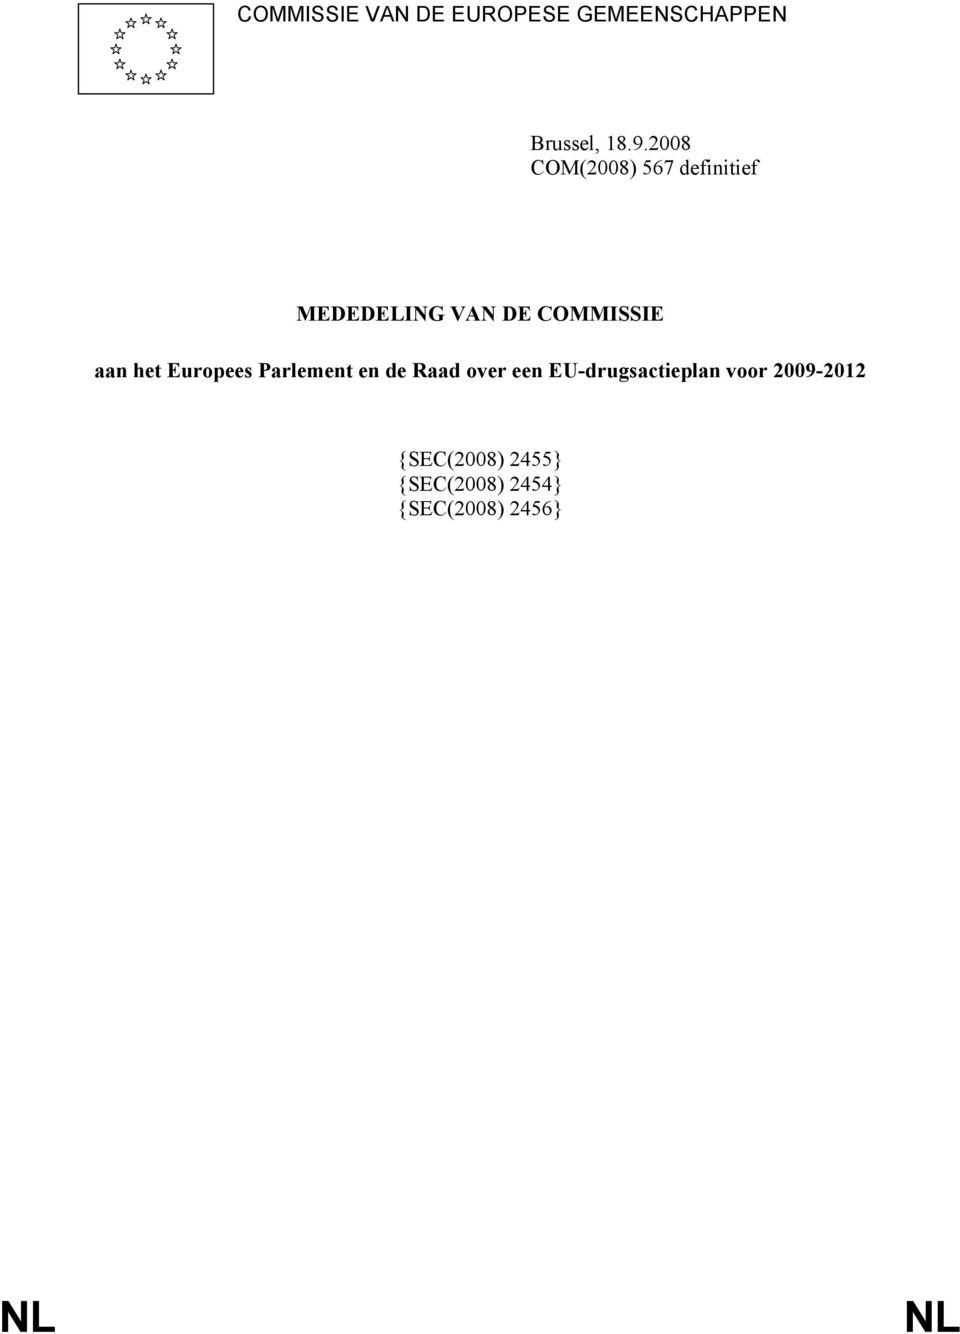 het Europees Parlement en de over een EU-drugsactieplan